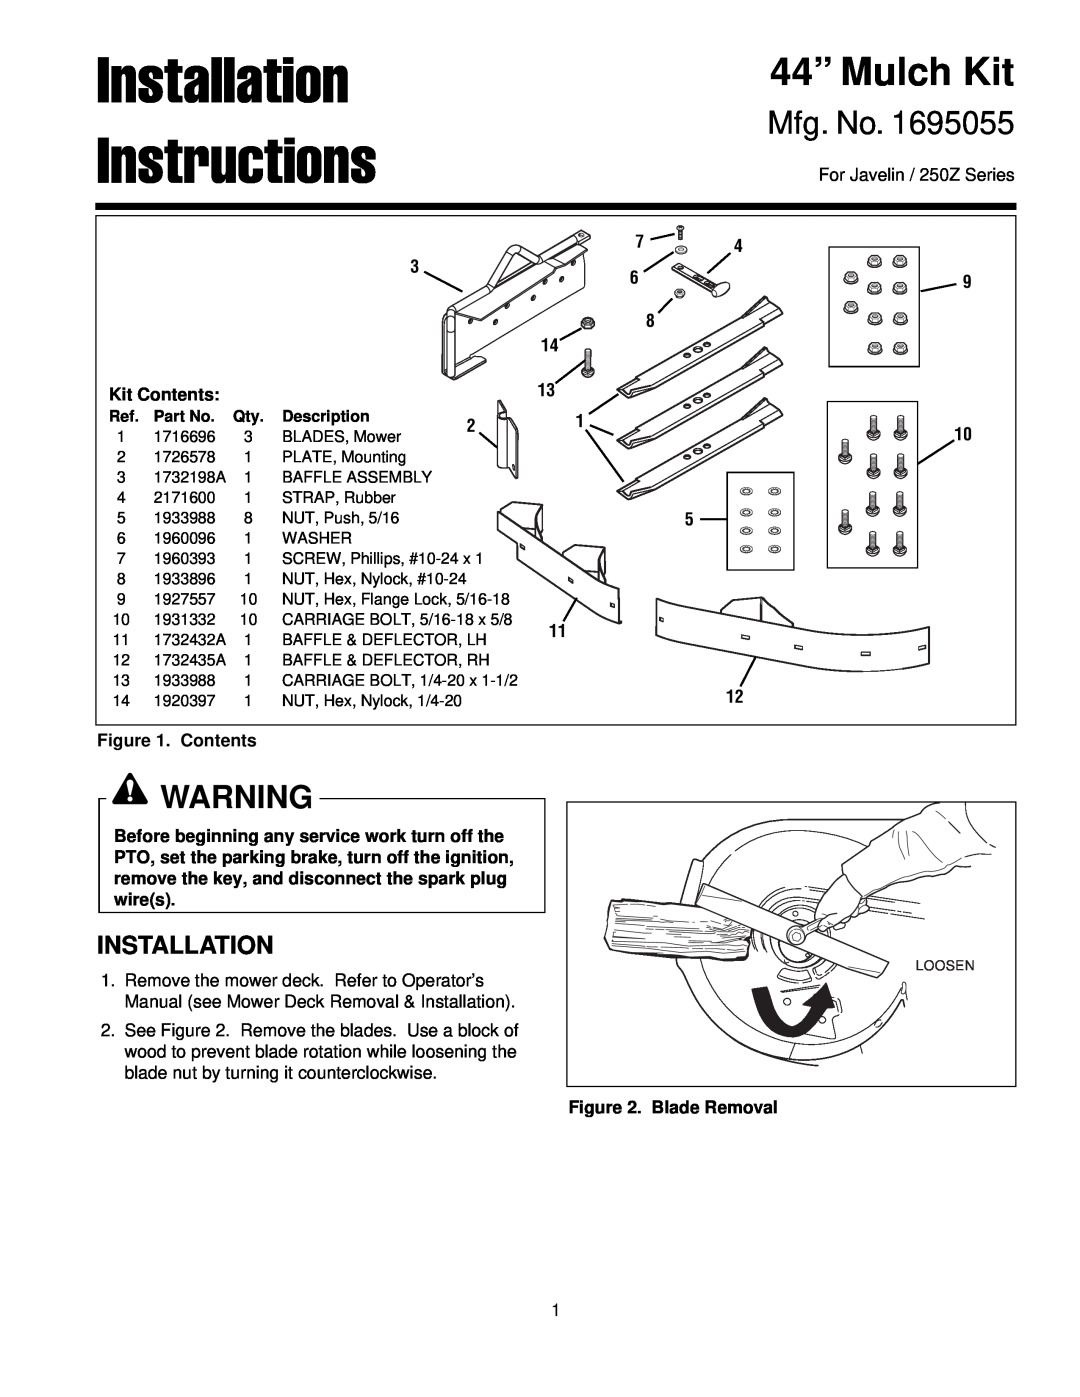 Simplicity 250Z installation instructions Installation Instructions, 44” Mulch Kit, Mfg. No 